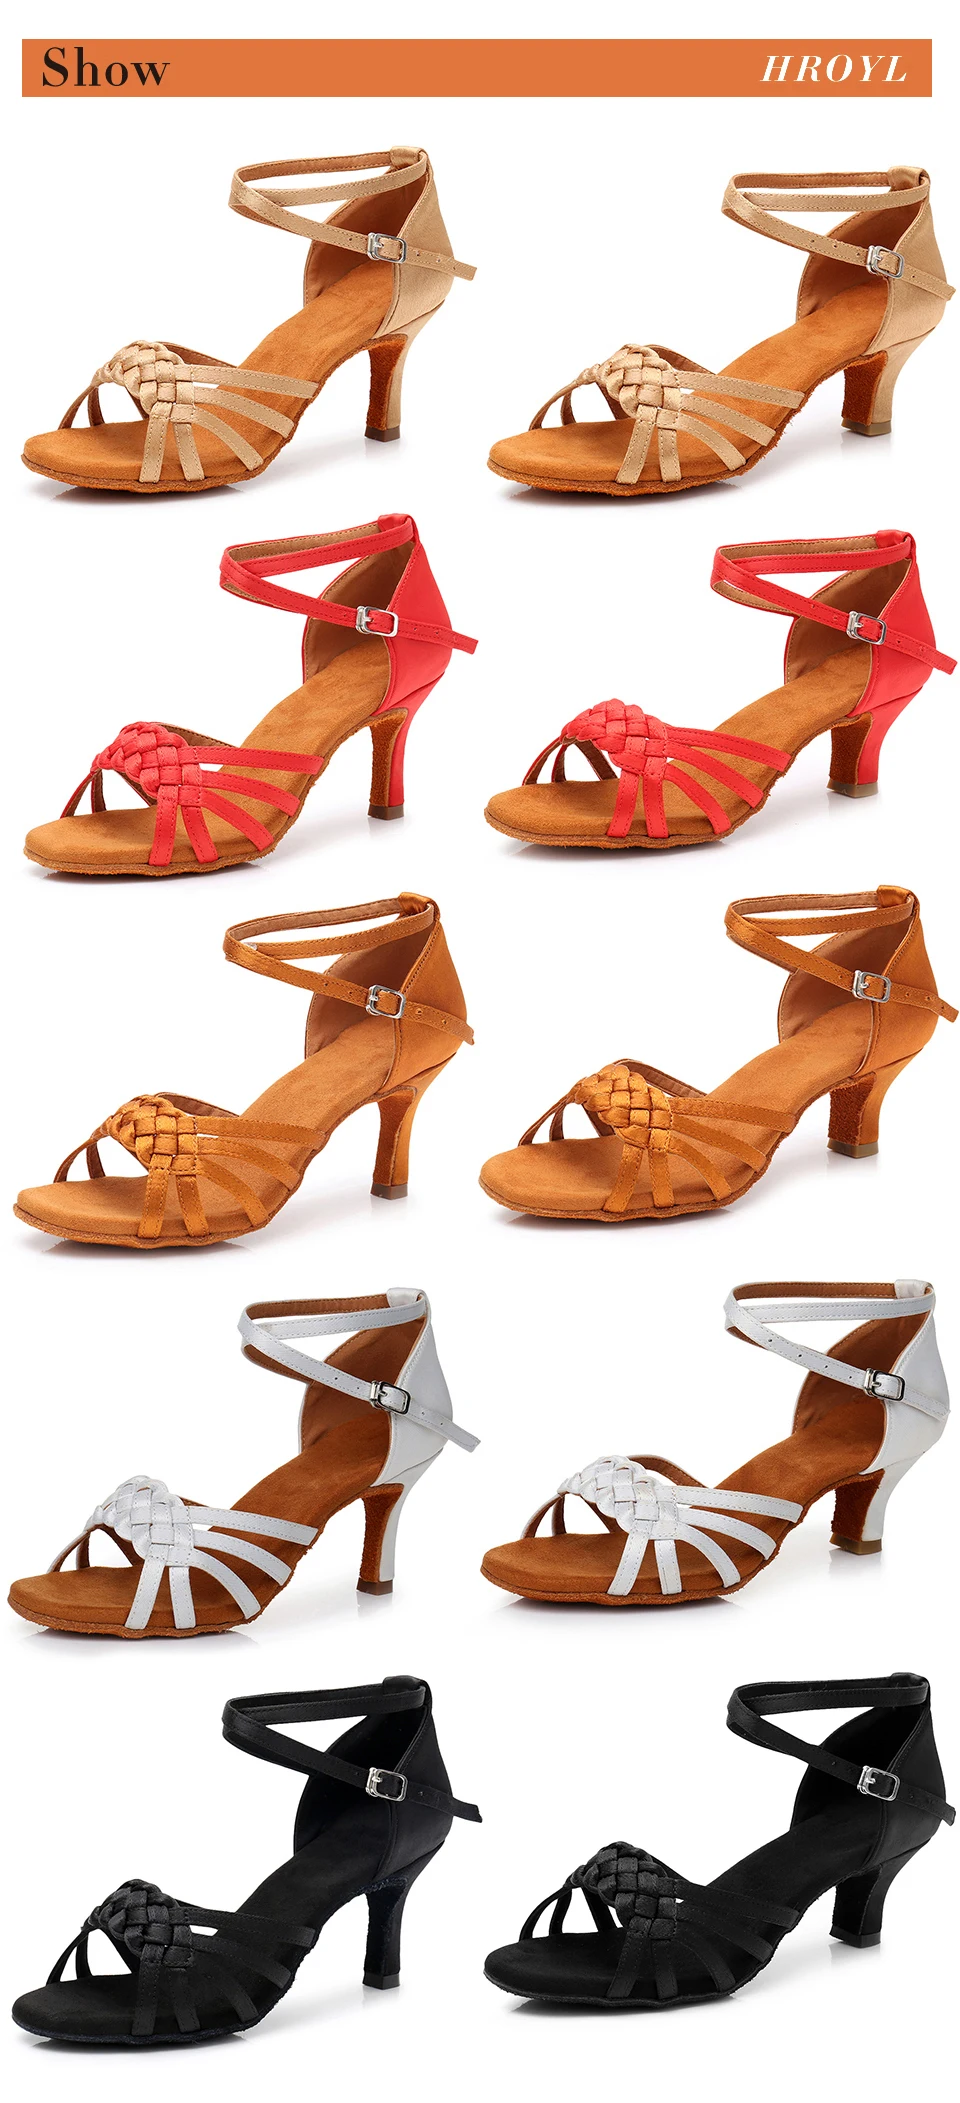 Женская танцевальная обувь для Танго/бальных/латинских танцев, танцевальная обувь на каблуке для сальсы, профессиональная танцевальная обувь для девушек 5 см/7 см